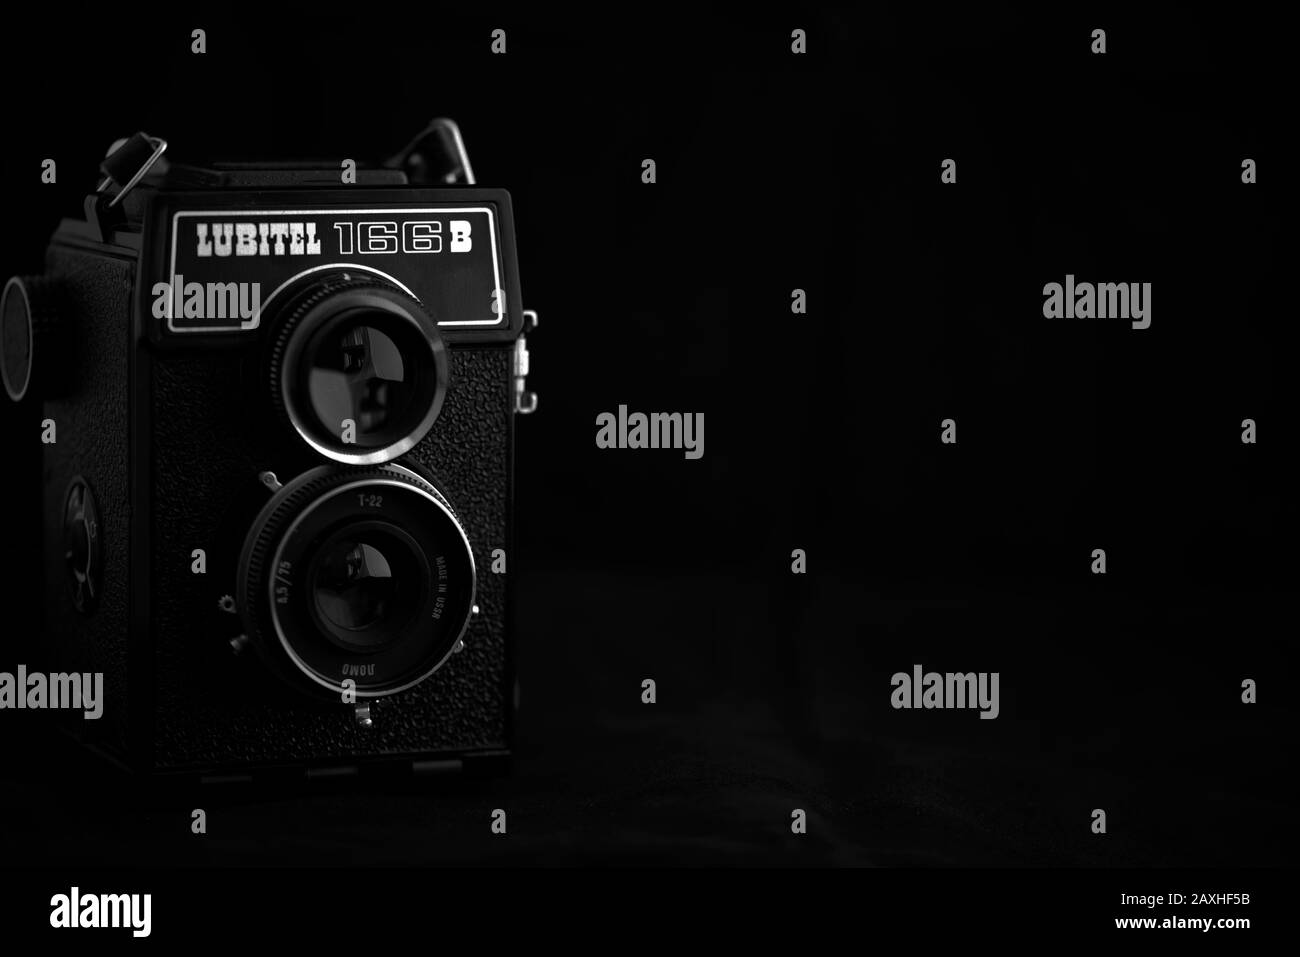 Reflex Kamera Lubitel 166B mit Twin-Objektiv und dunklem Hintergrund. Stockfoto